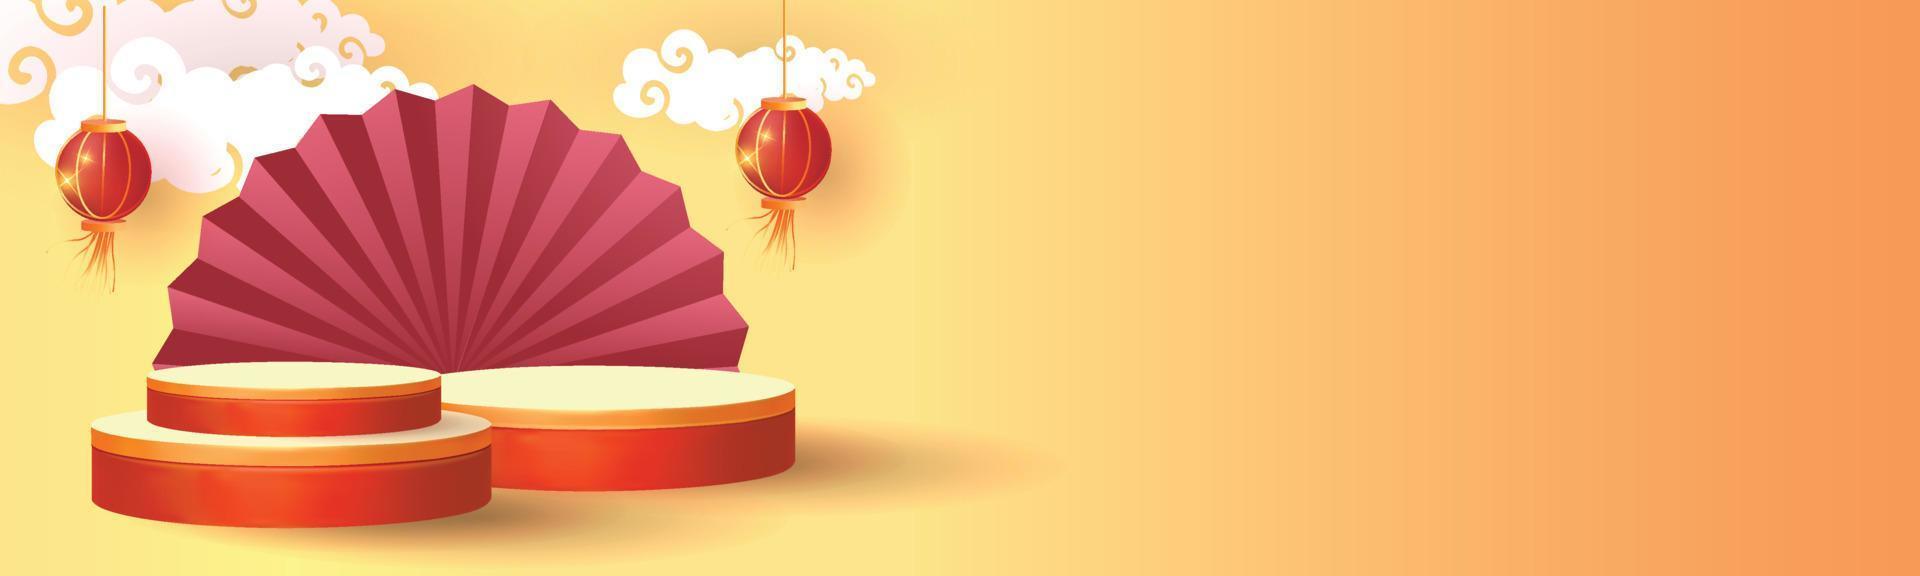 gelukkig china nieuwjaar podium goud rood achtergrond festival vector illustratie ontwerp banner art